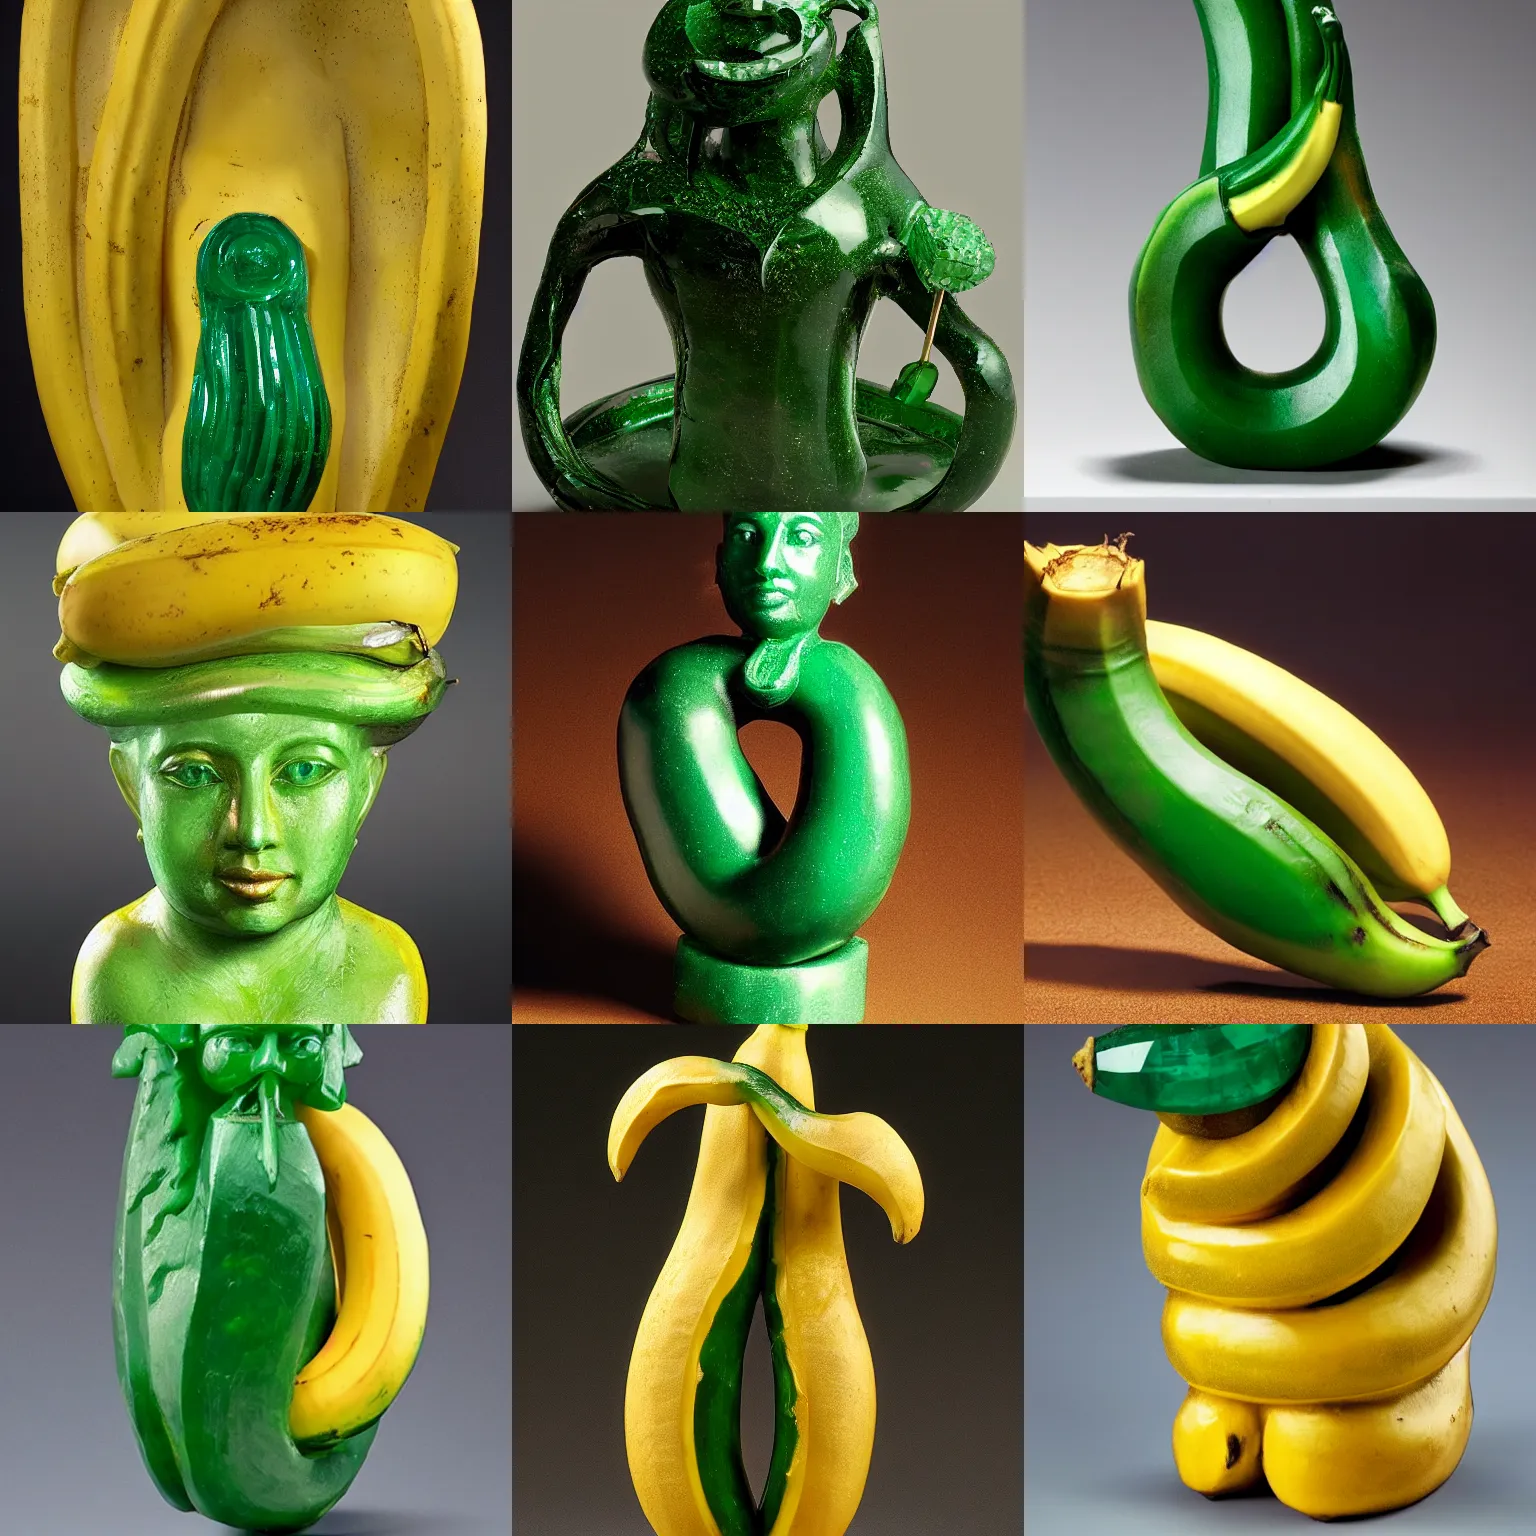 Prompt: An emerald sculpture of a banana